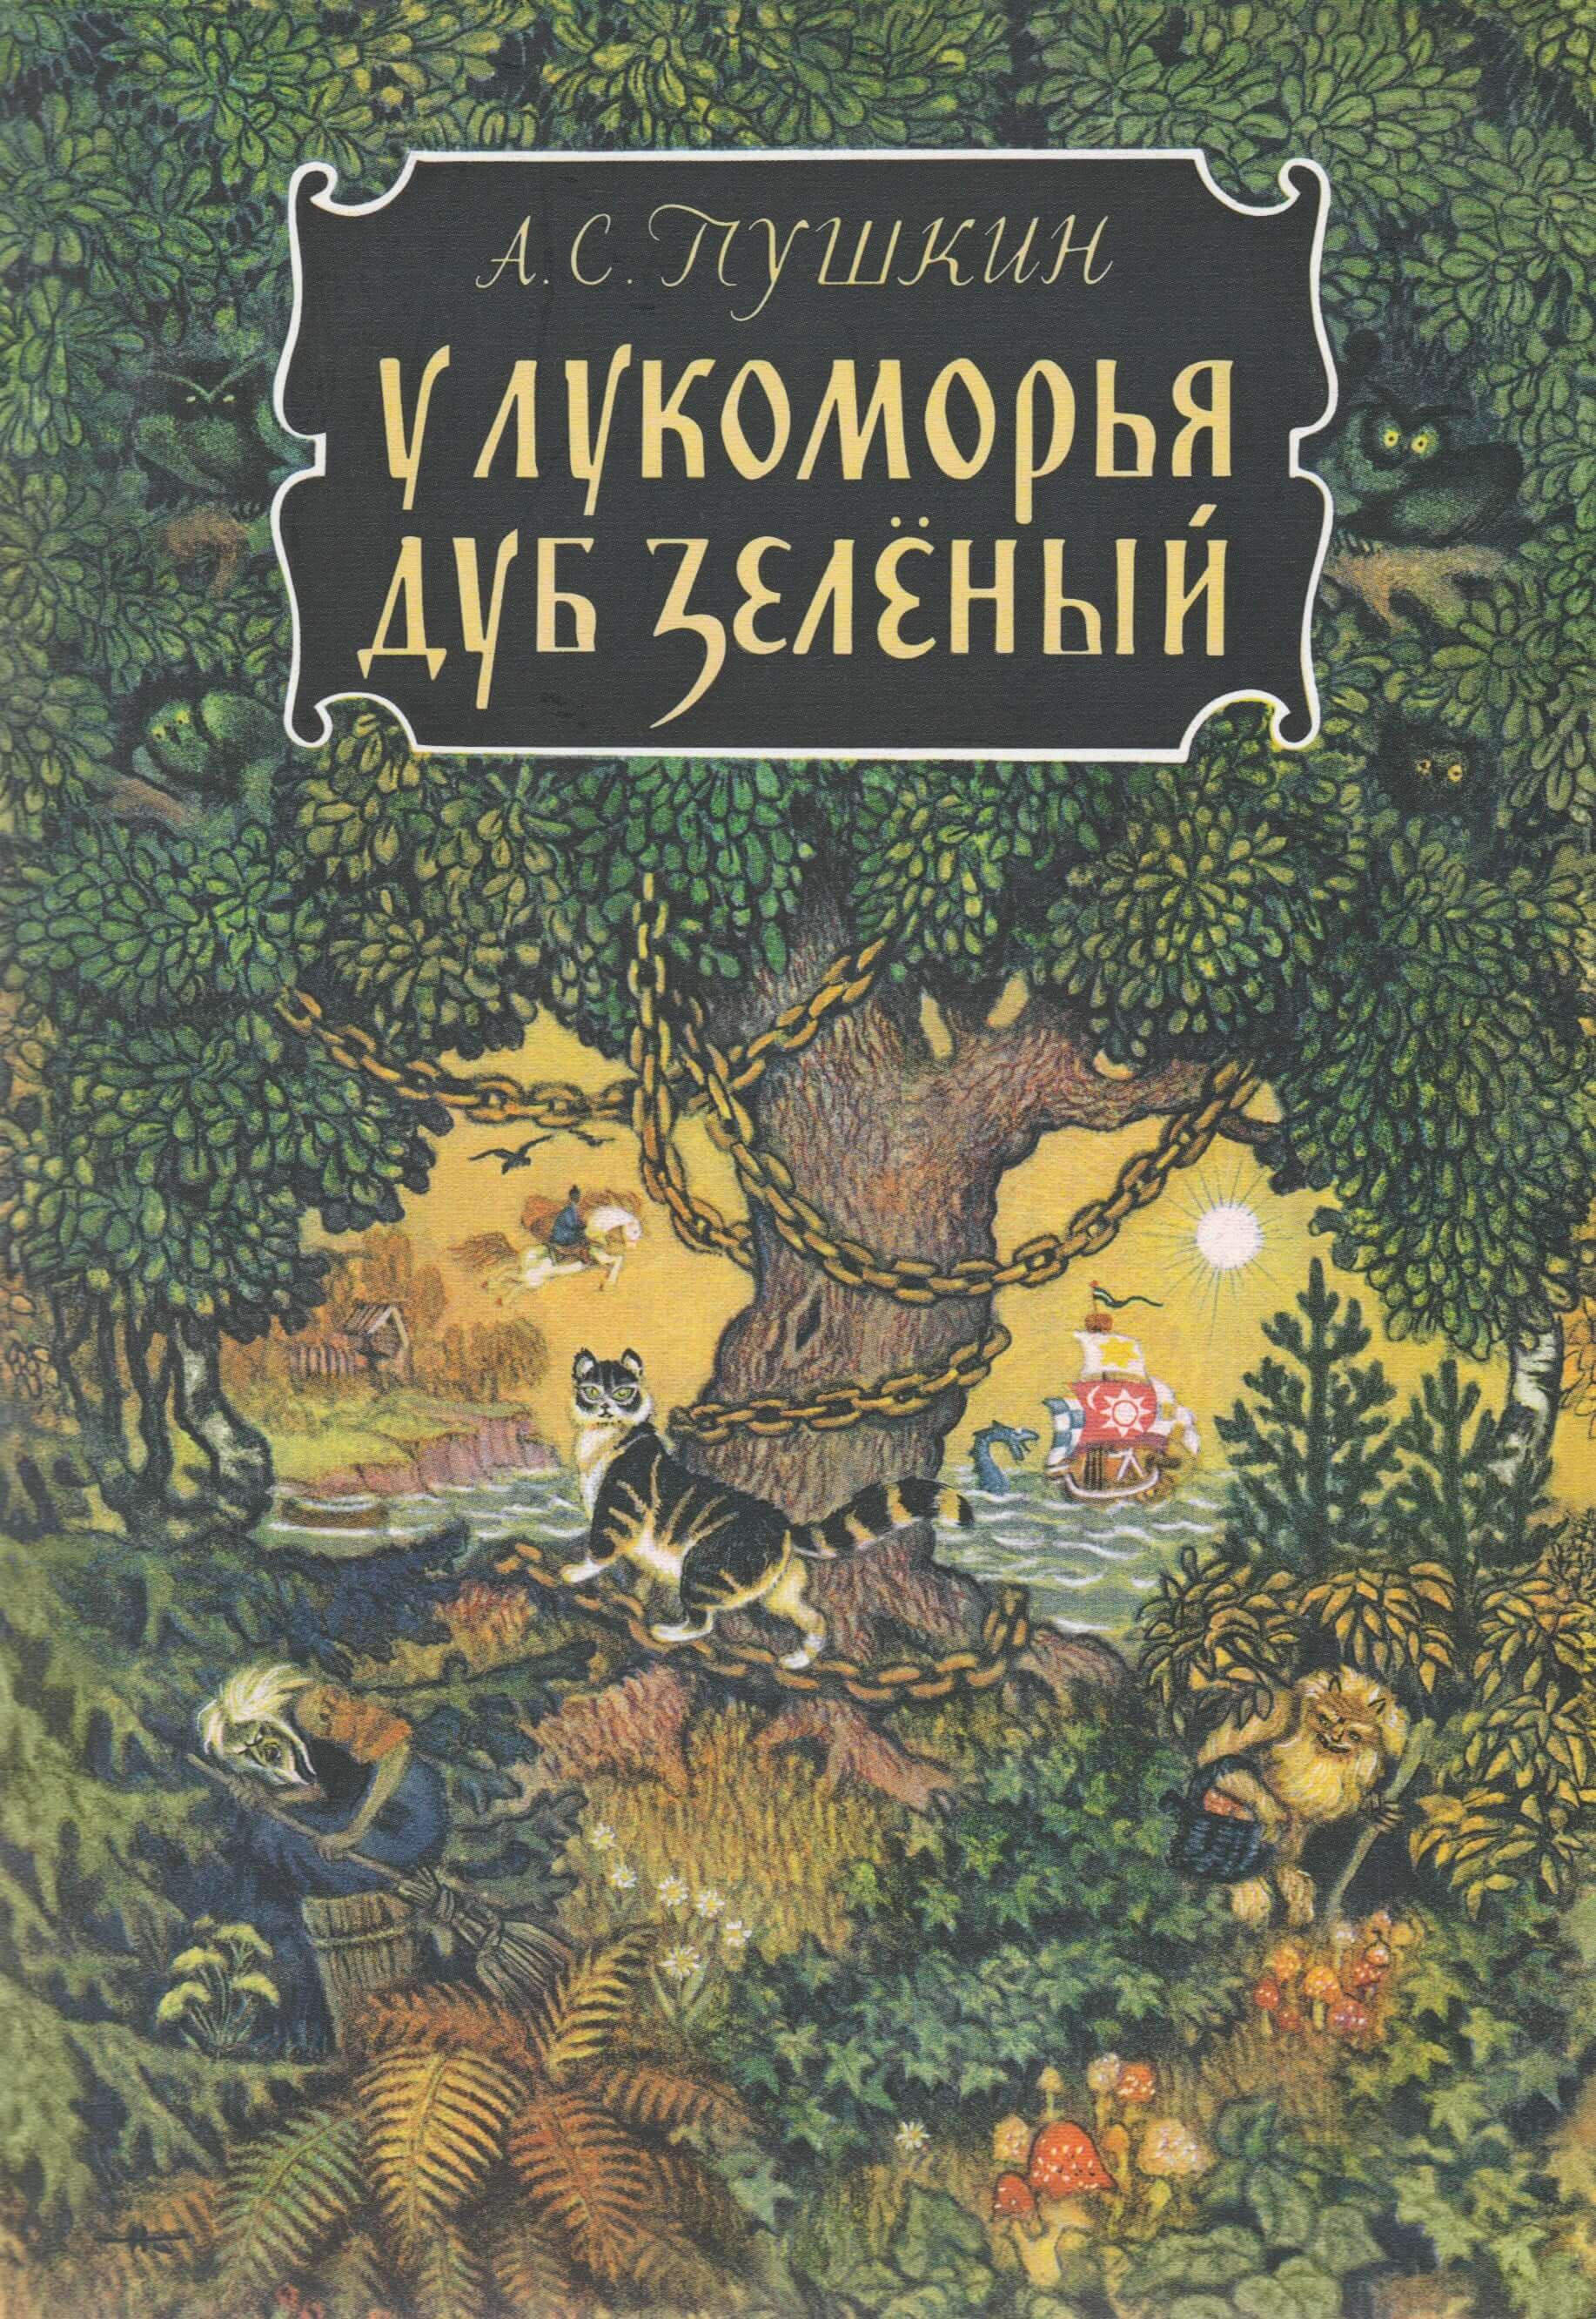 russian children's books